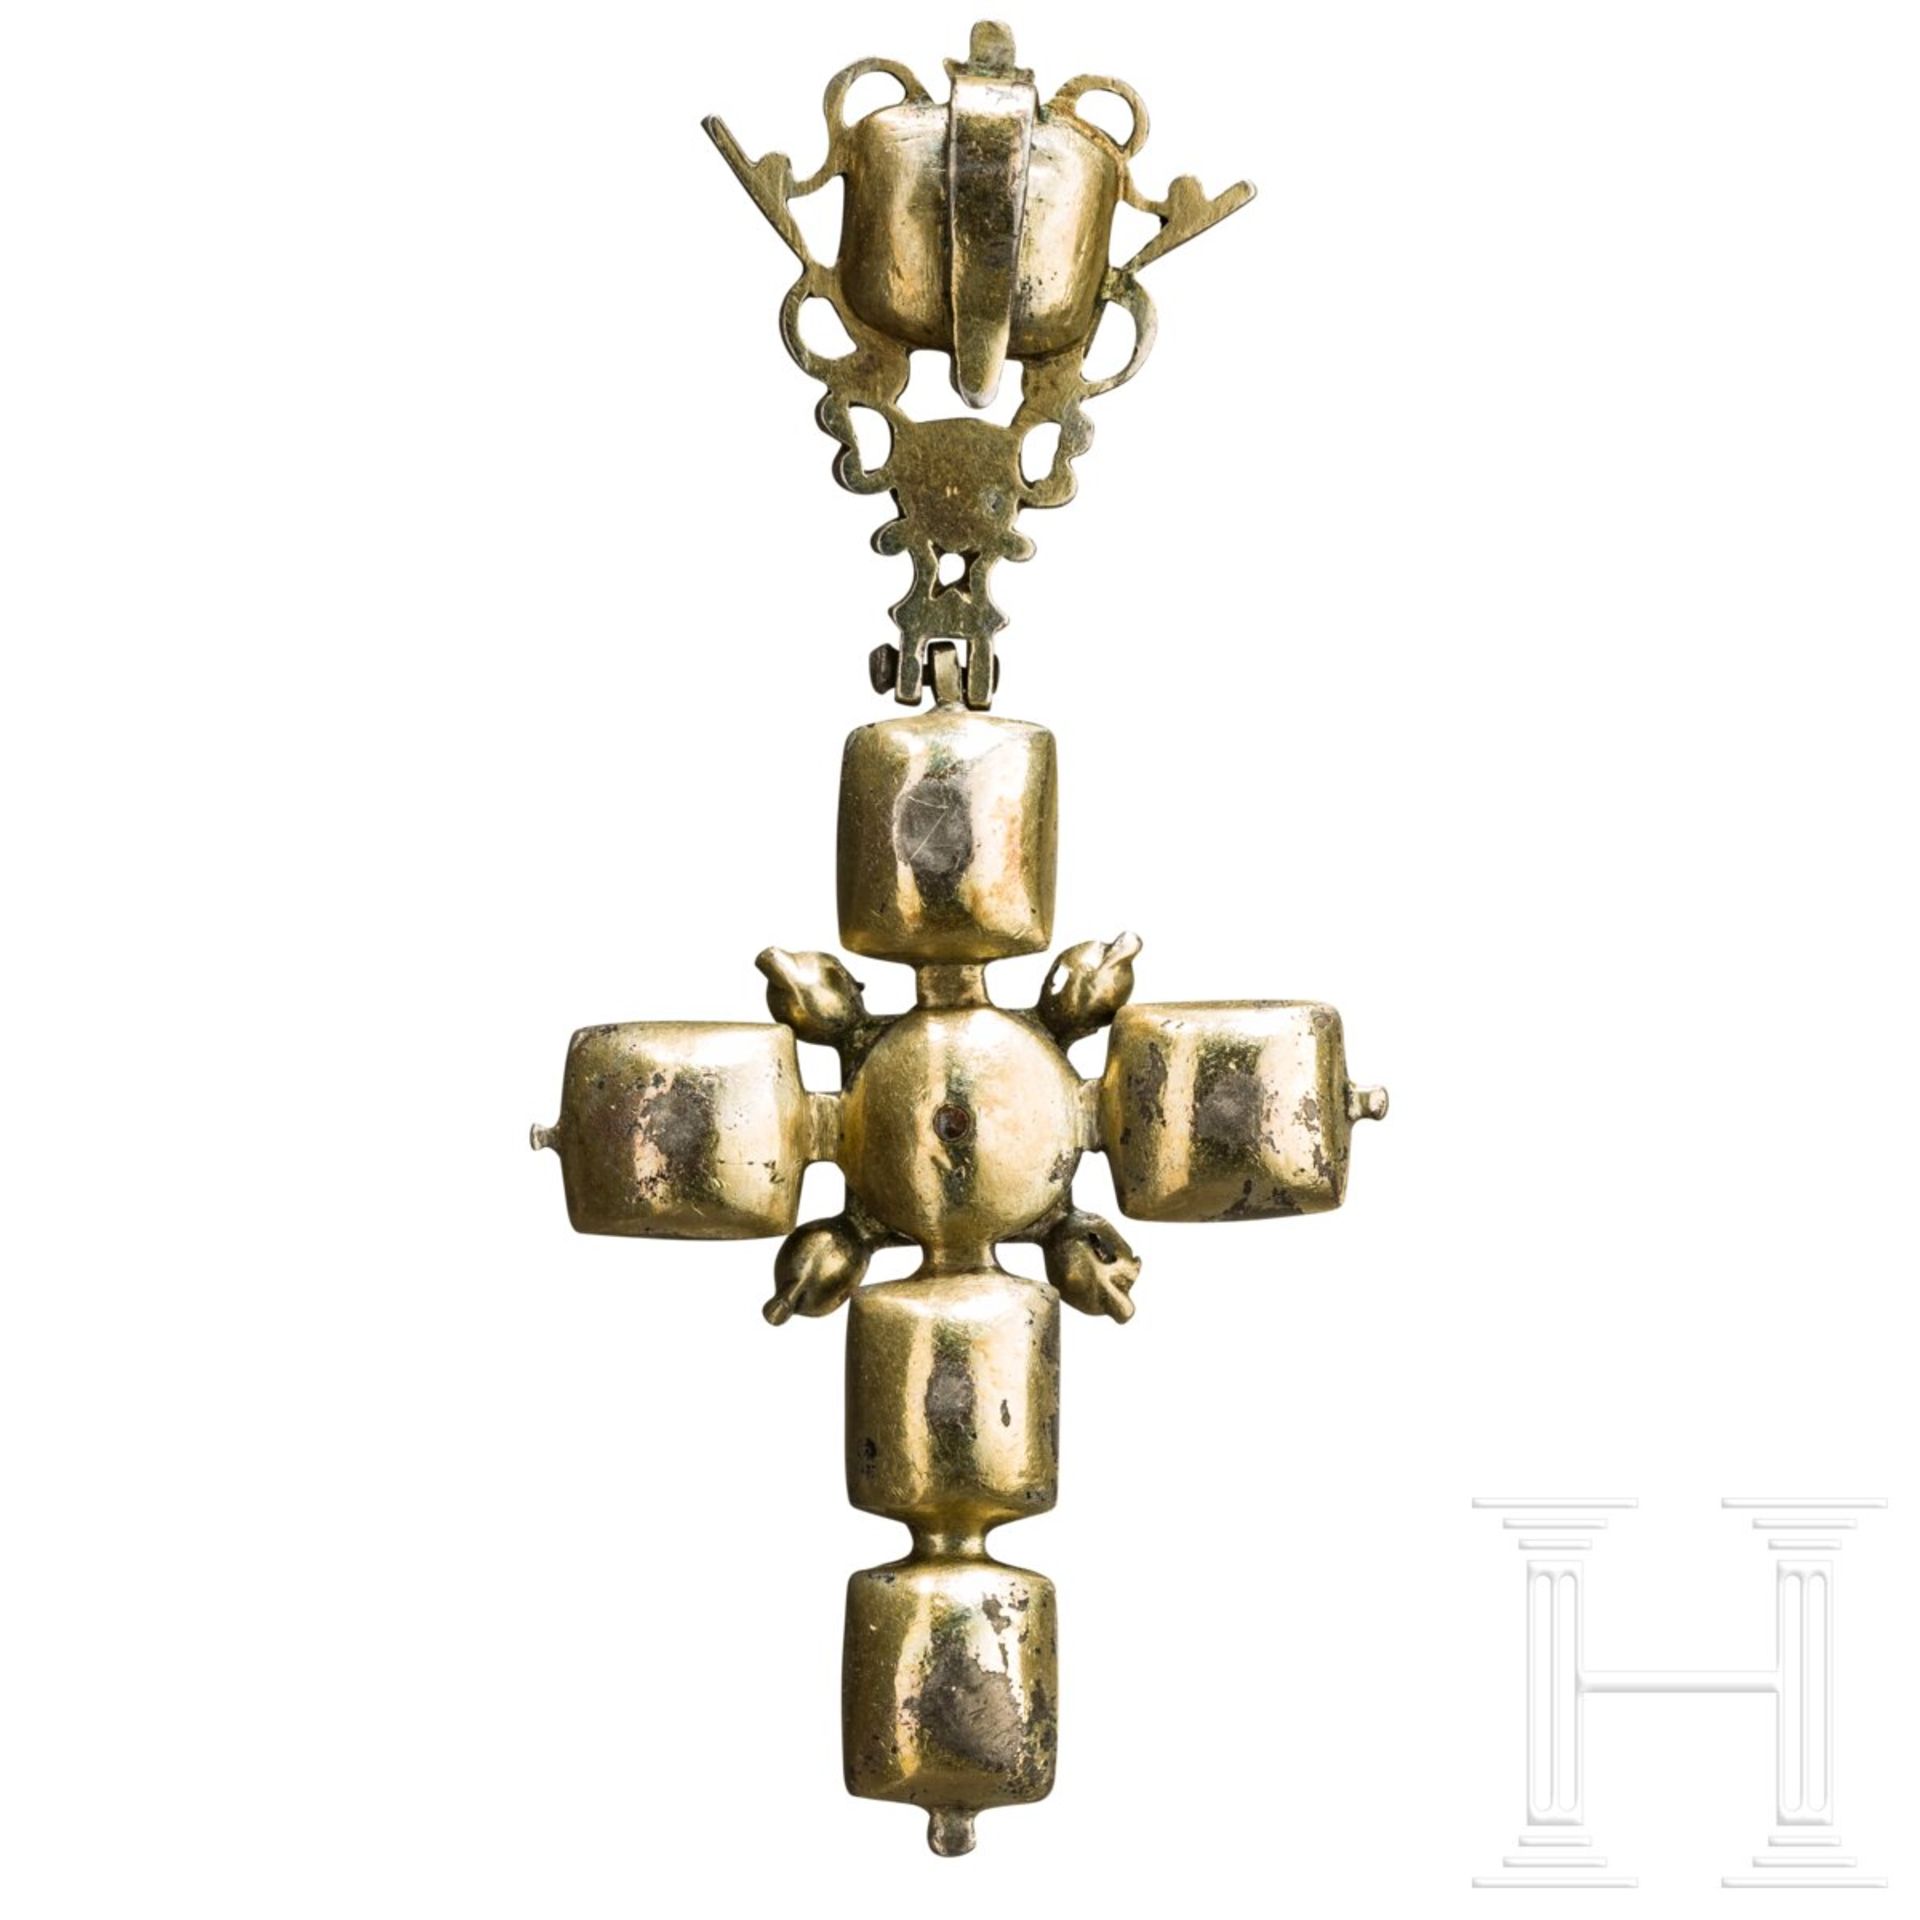 Barocker Kreuzanhänger mit Steinbesatz, süddeutsch, 1. Hälfte 18. Jhdt. - Bild 2 aus 4